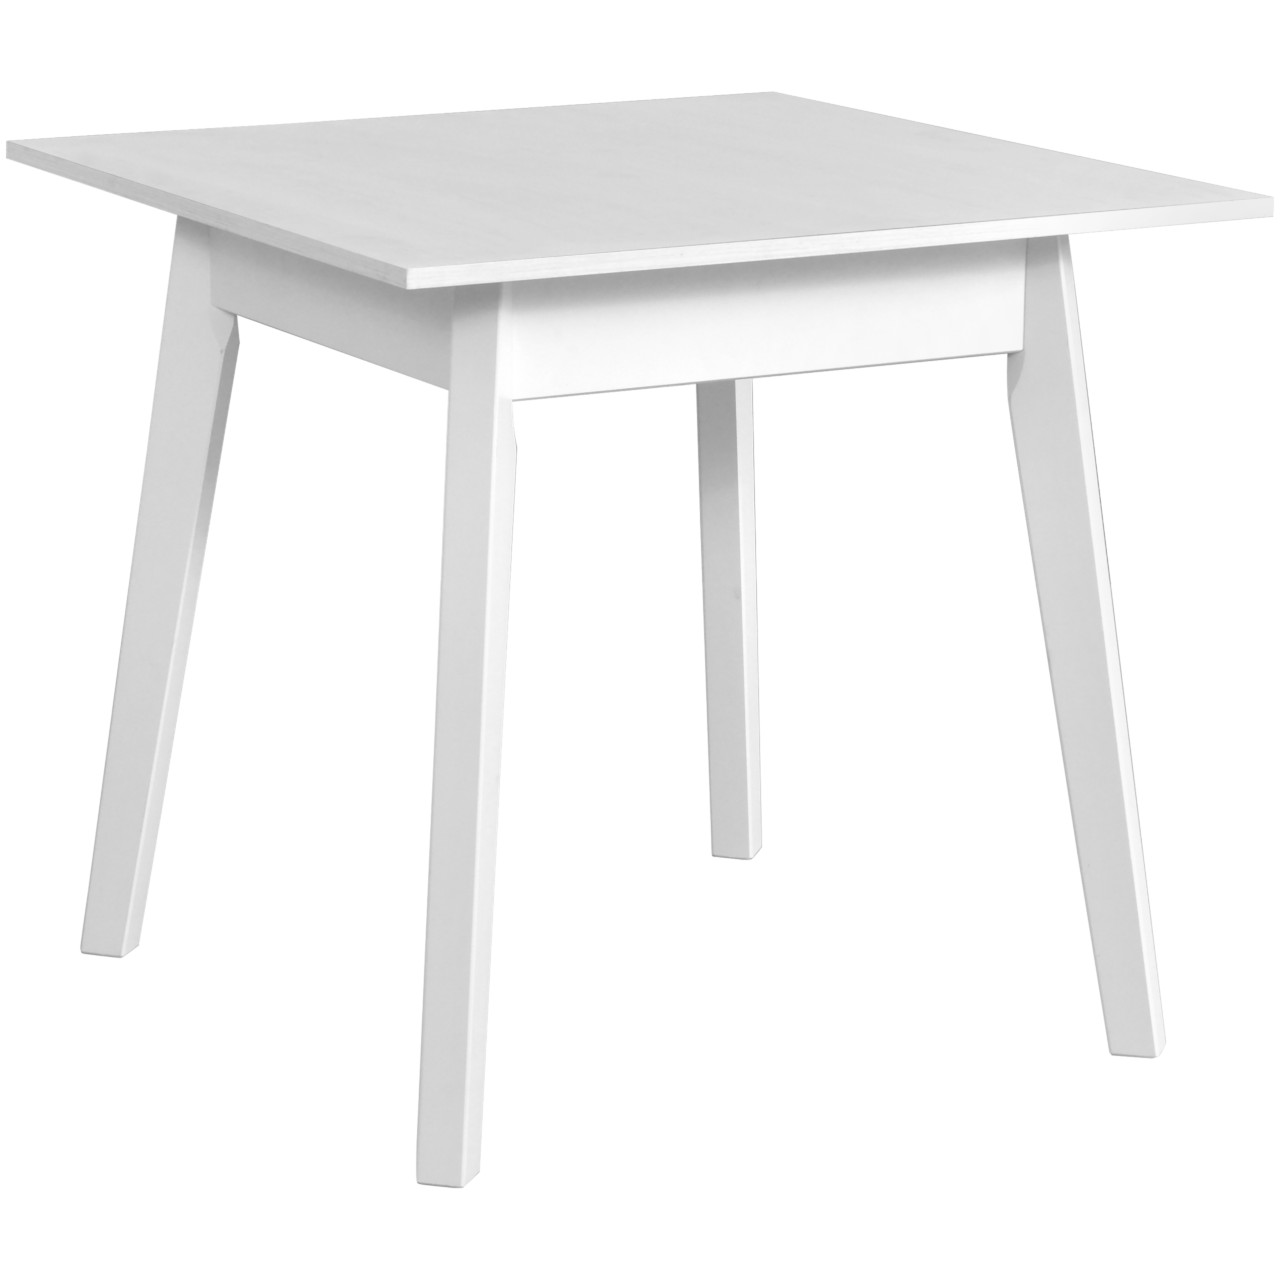 Tisch OSLO 1 80x80 weiß laminat